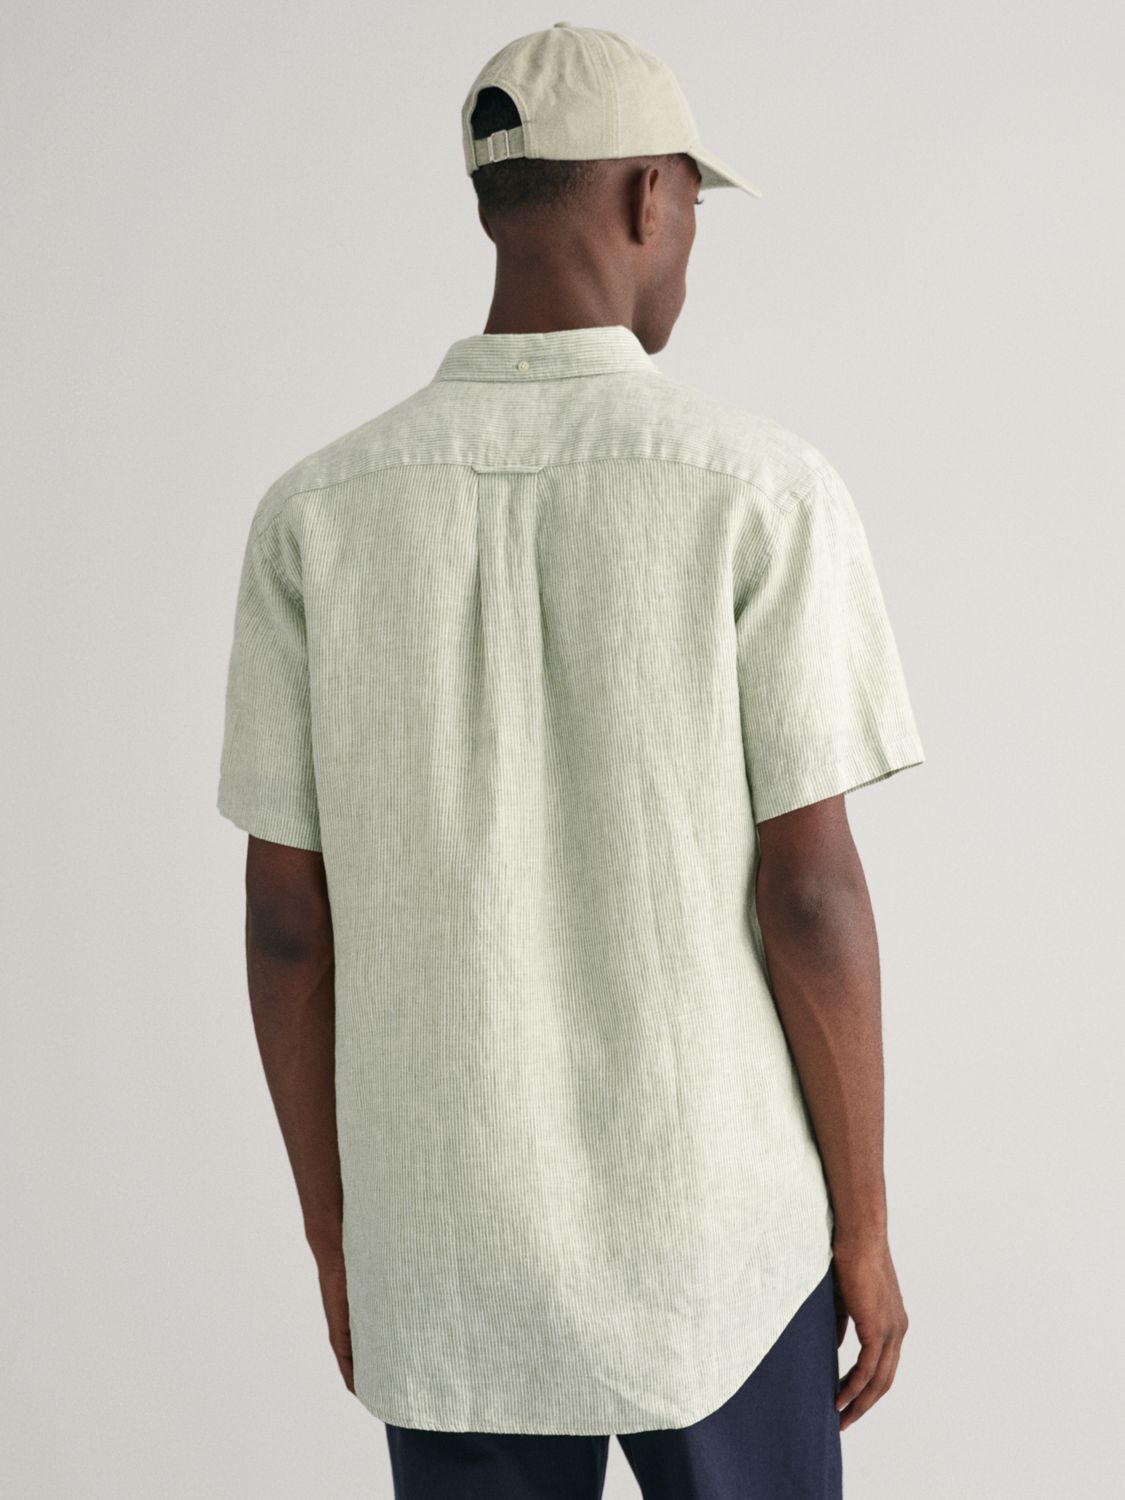 GANT Linen Short Sleeve Shirt, Green, XL